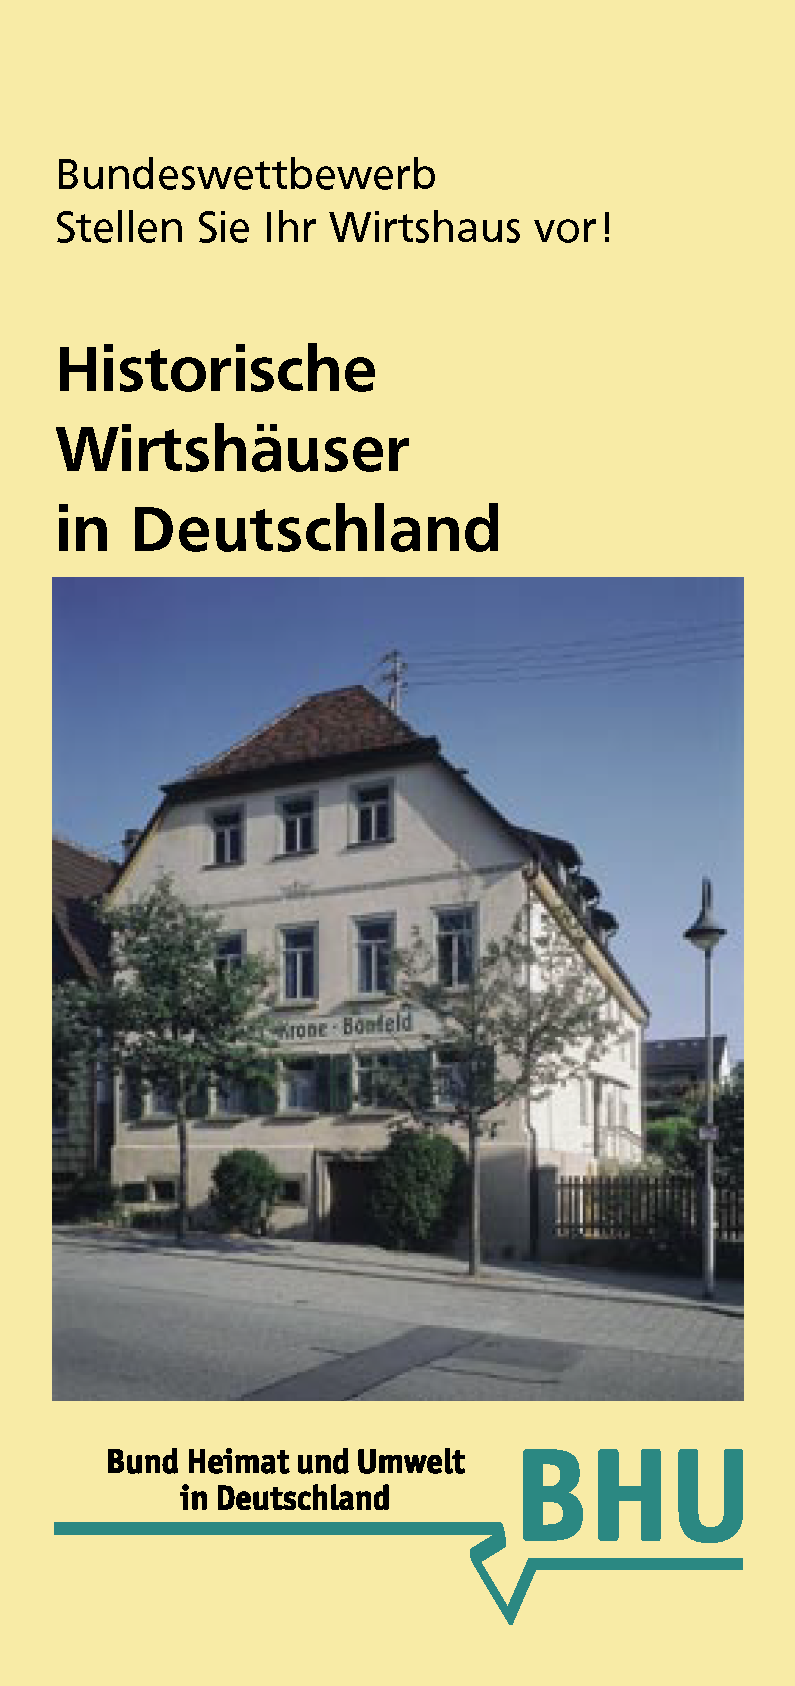 Historische Wirtshäuser in Deutschland - Bundeswettbewerb des Jahres 2008